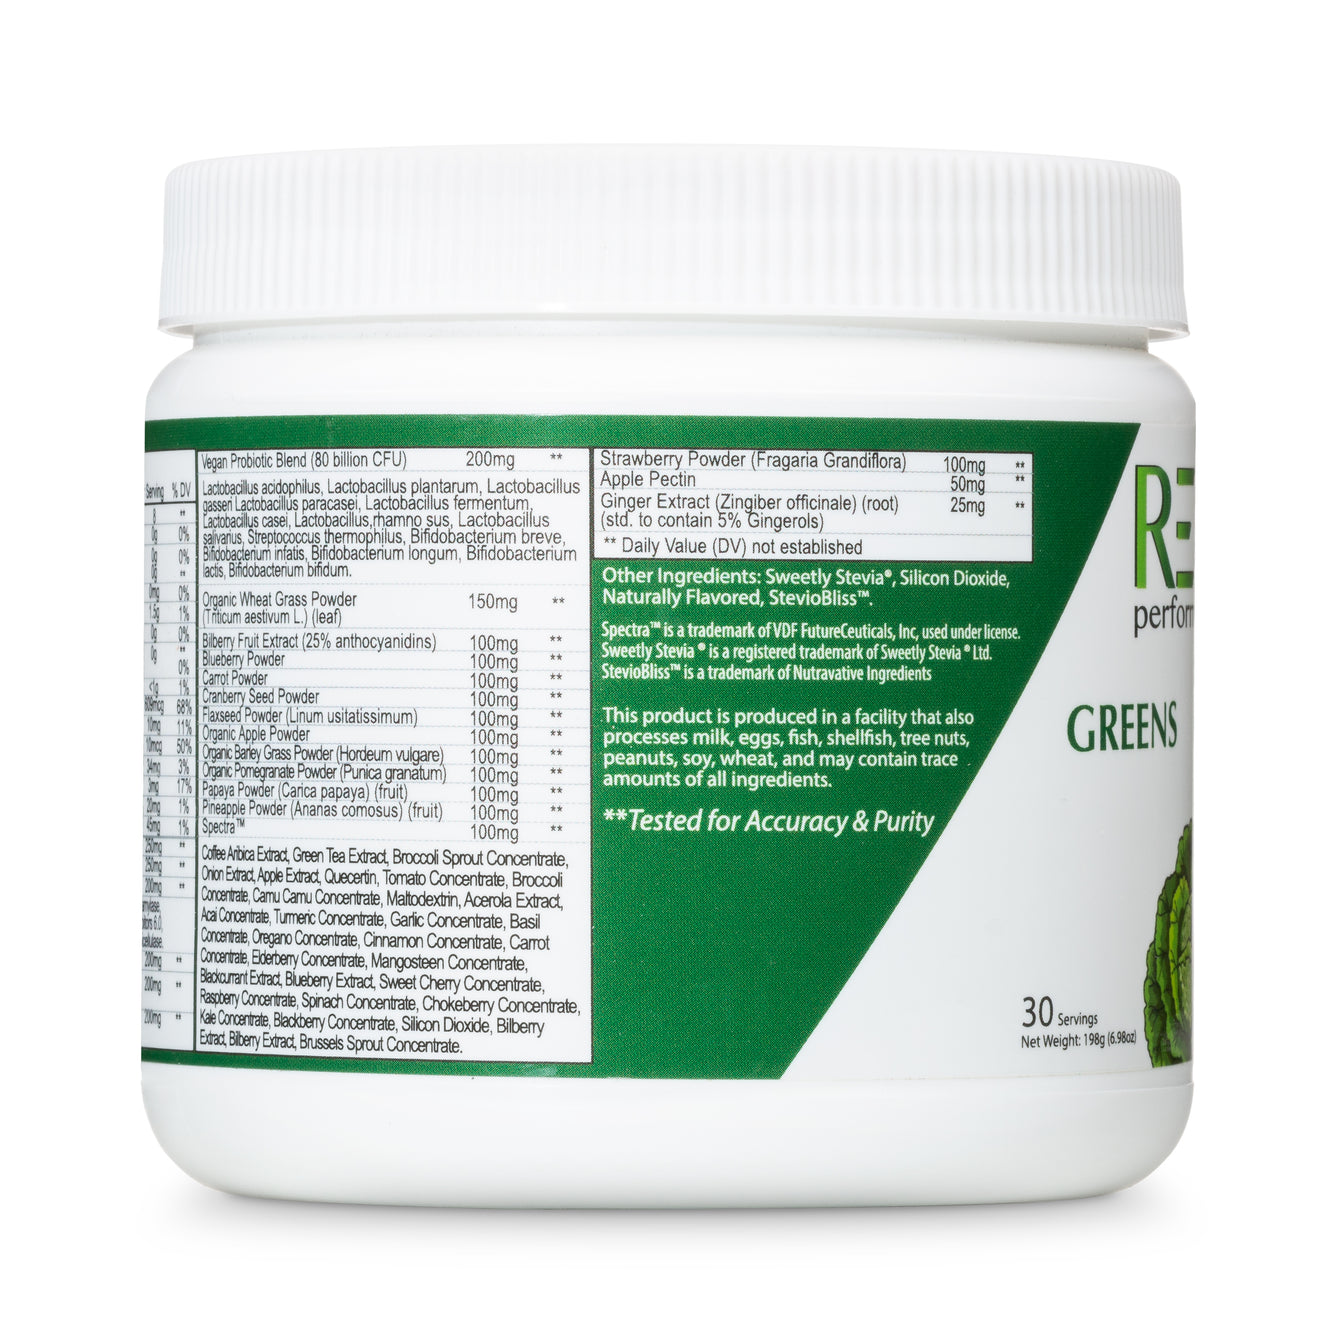 Super Greens Supplement Powder Ingredients